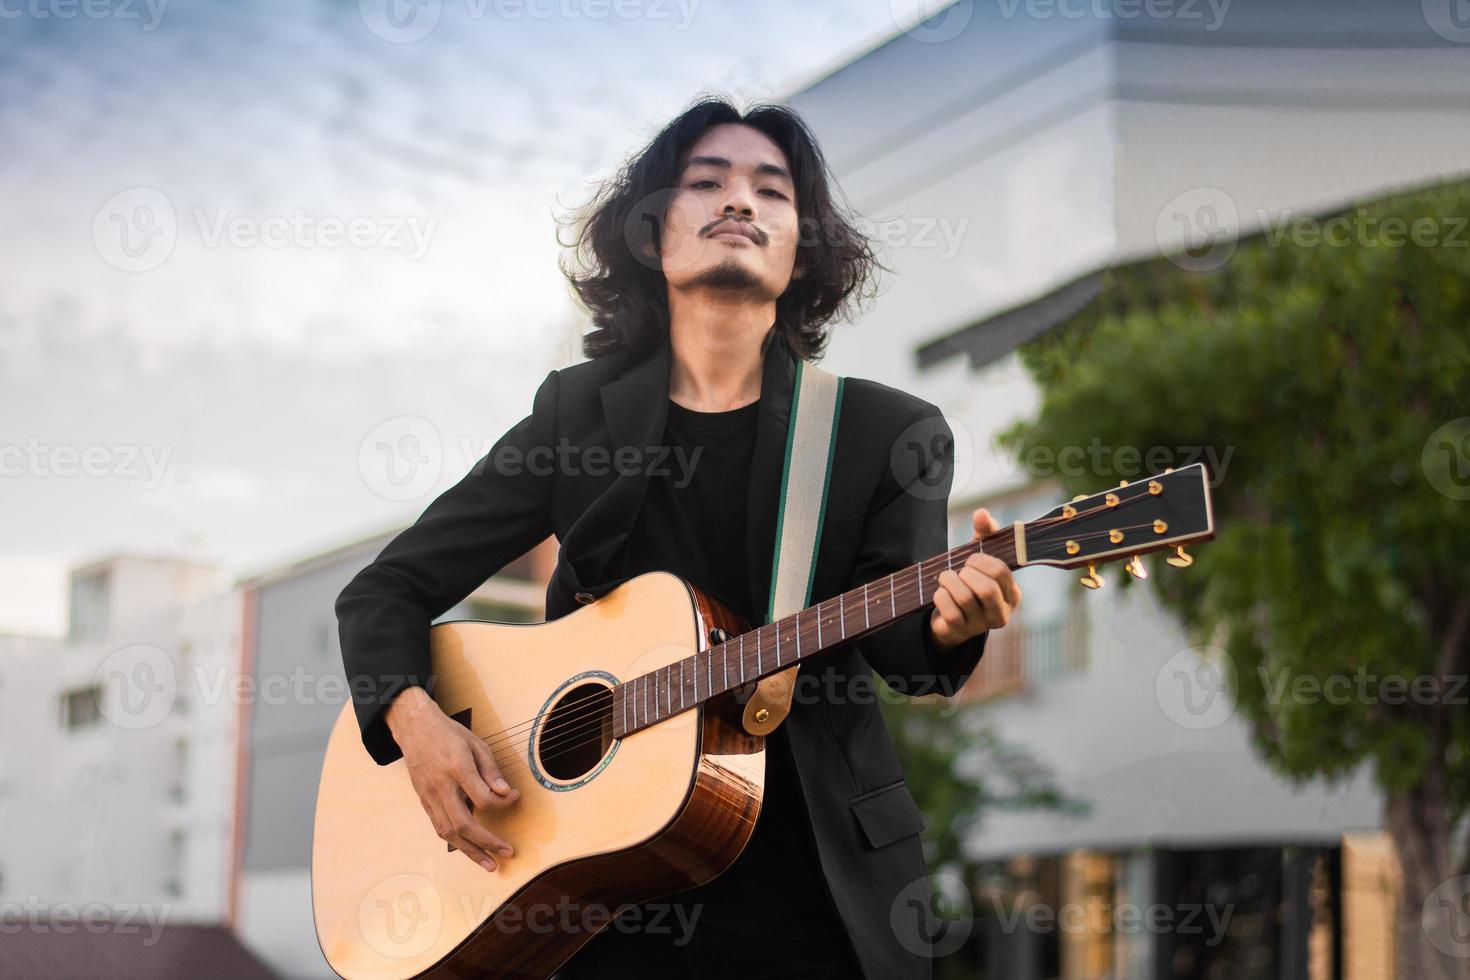 Porträts Mann halten Gitarre spielen Musikfestival im Freien, Lifestyle Mode Musik Straße im Freien foto